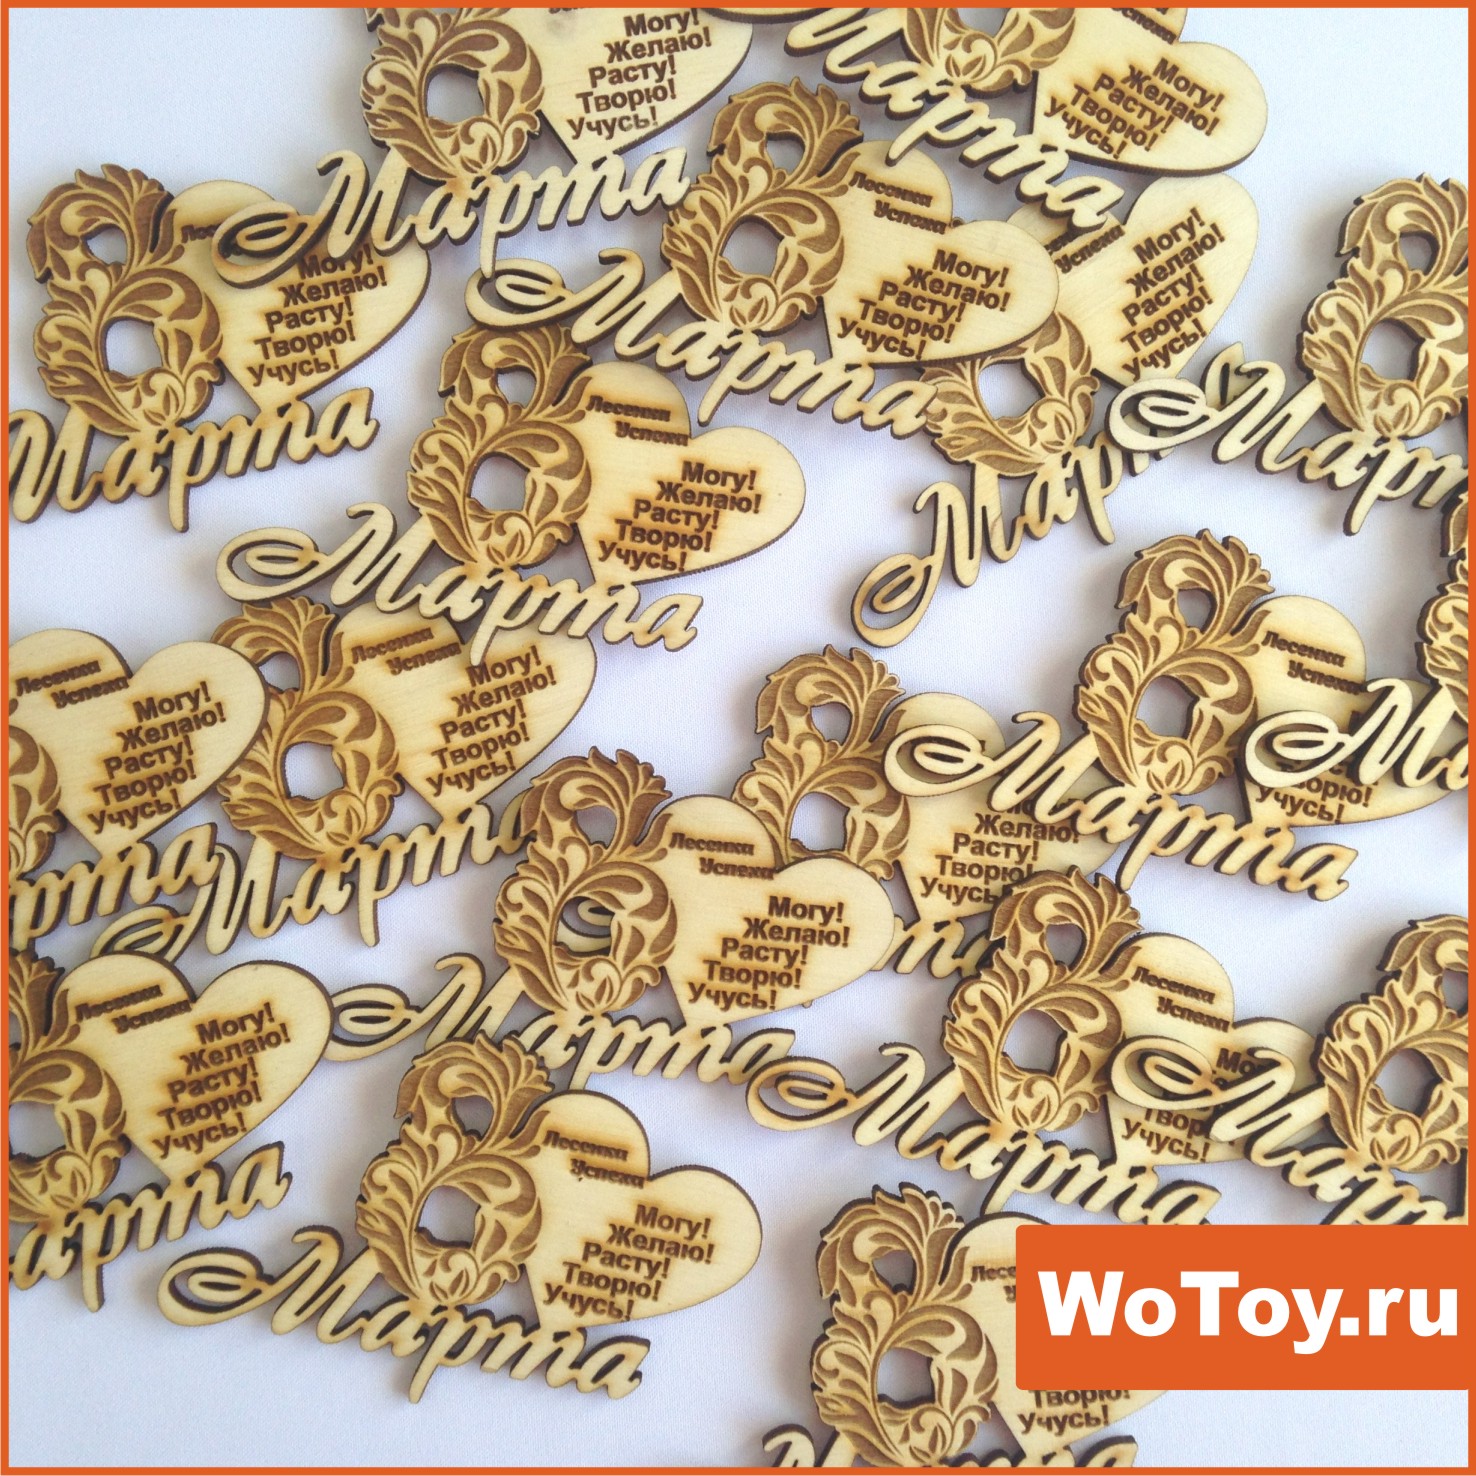 Заказать магниты из дерева сувенирные в Кирове по низким ценам WoToy